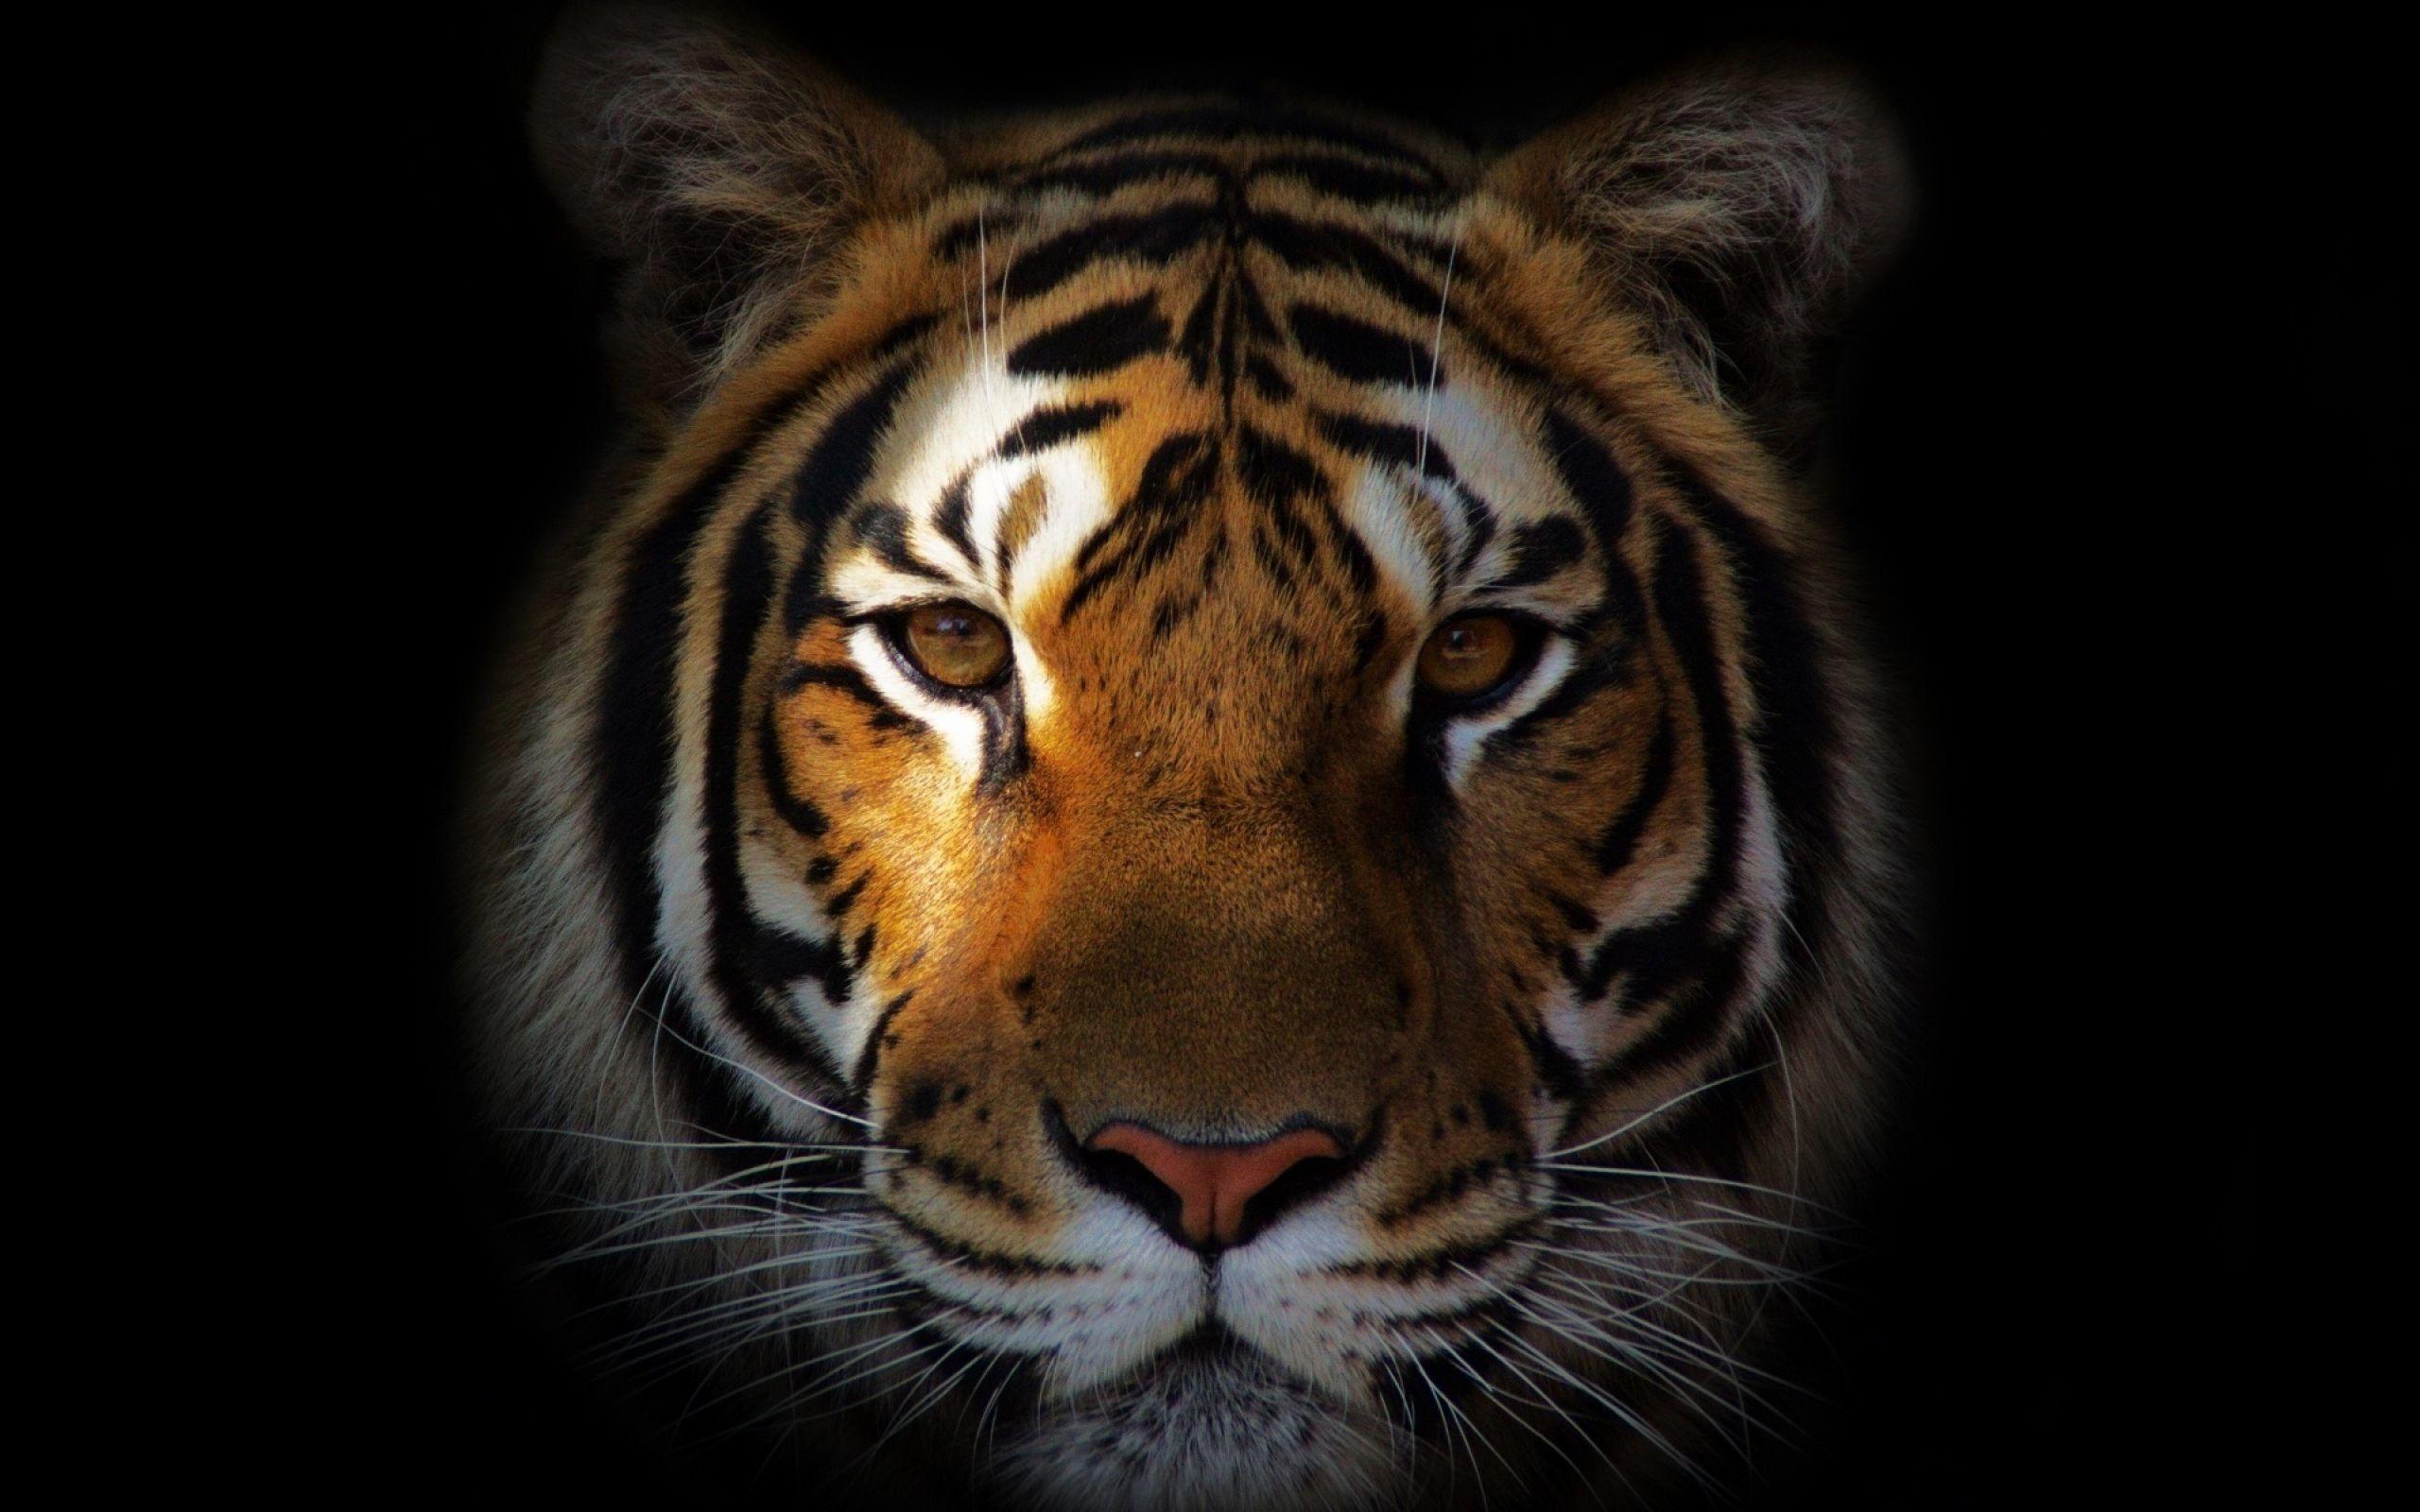 Tiger Desktop Wallpapers - Top Free Tiger Desktop Backgrounds ...